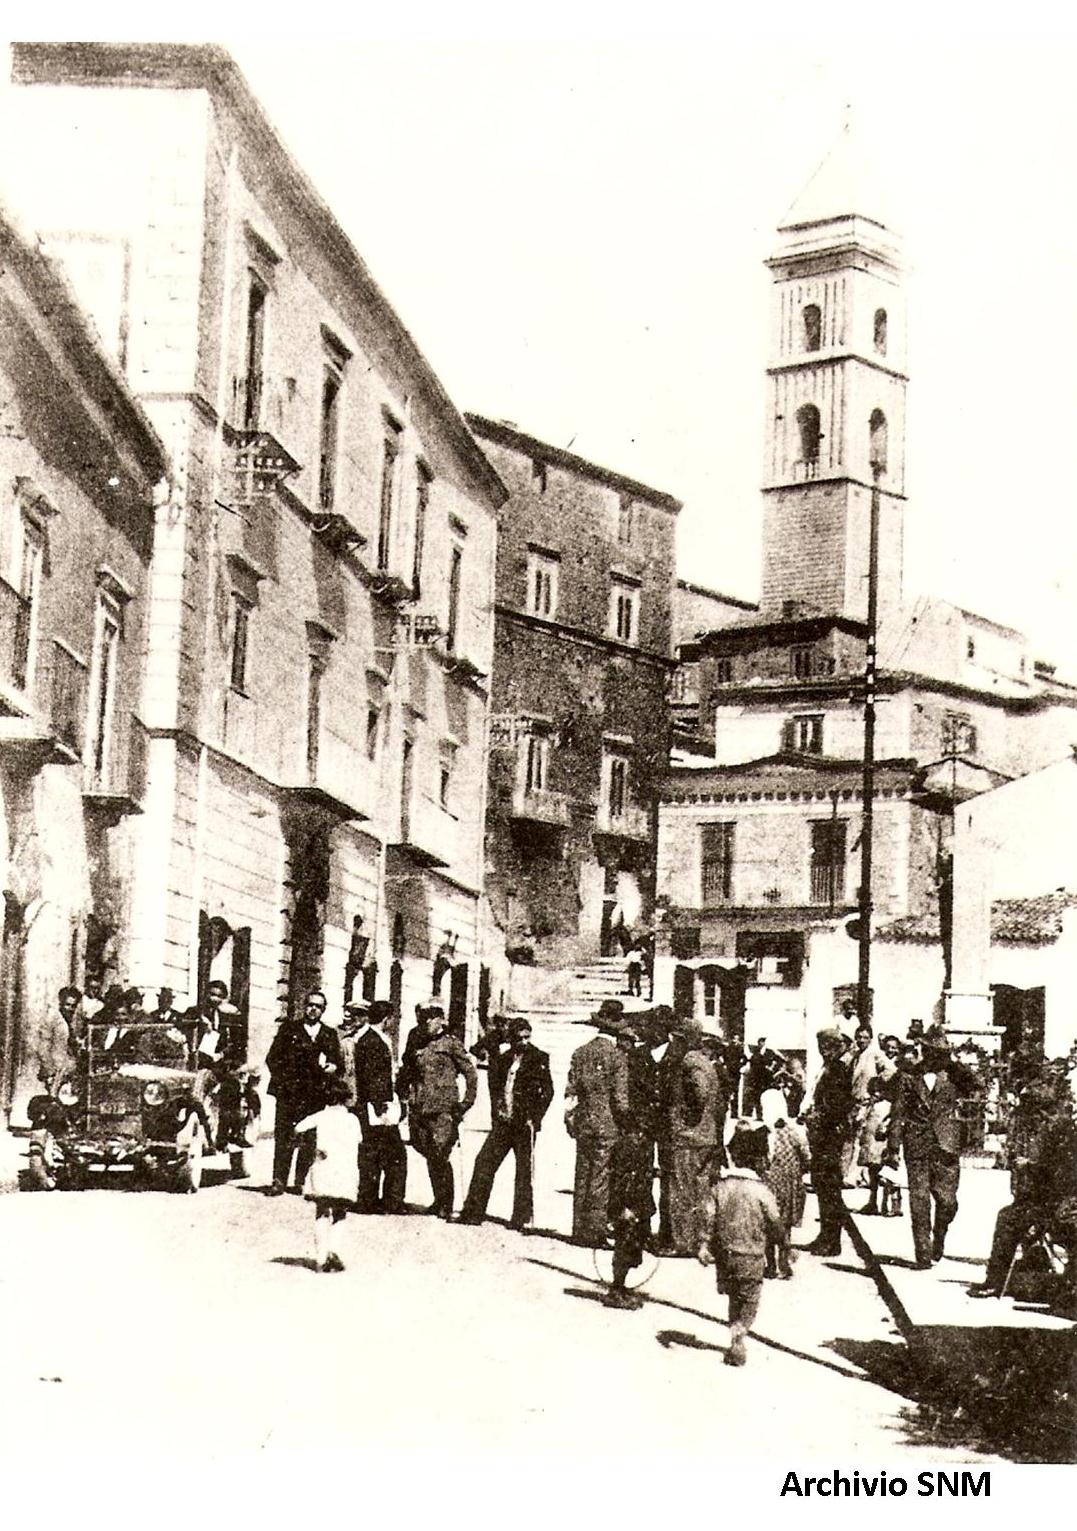 la Piazza di Sant'Agata nell'epoca